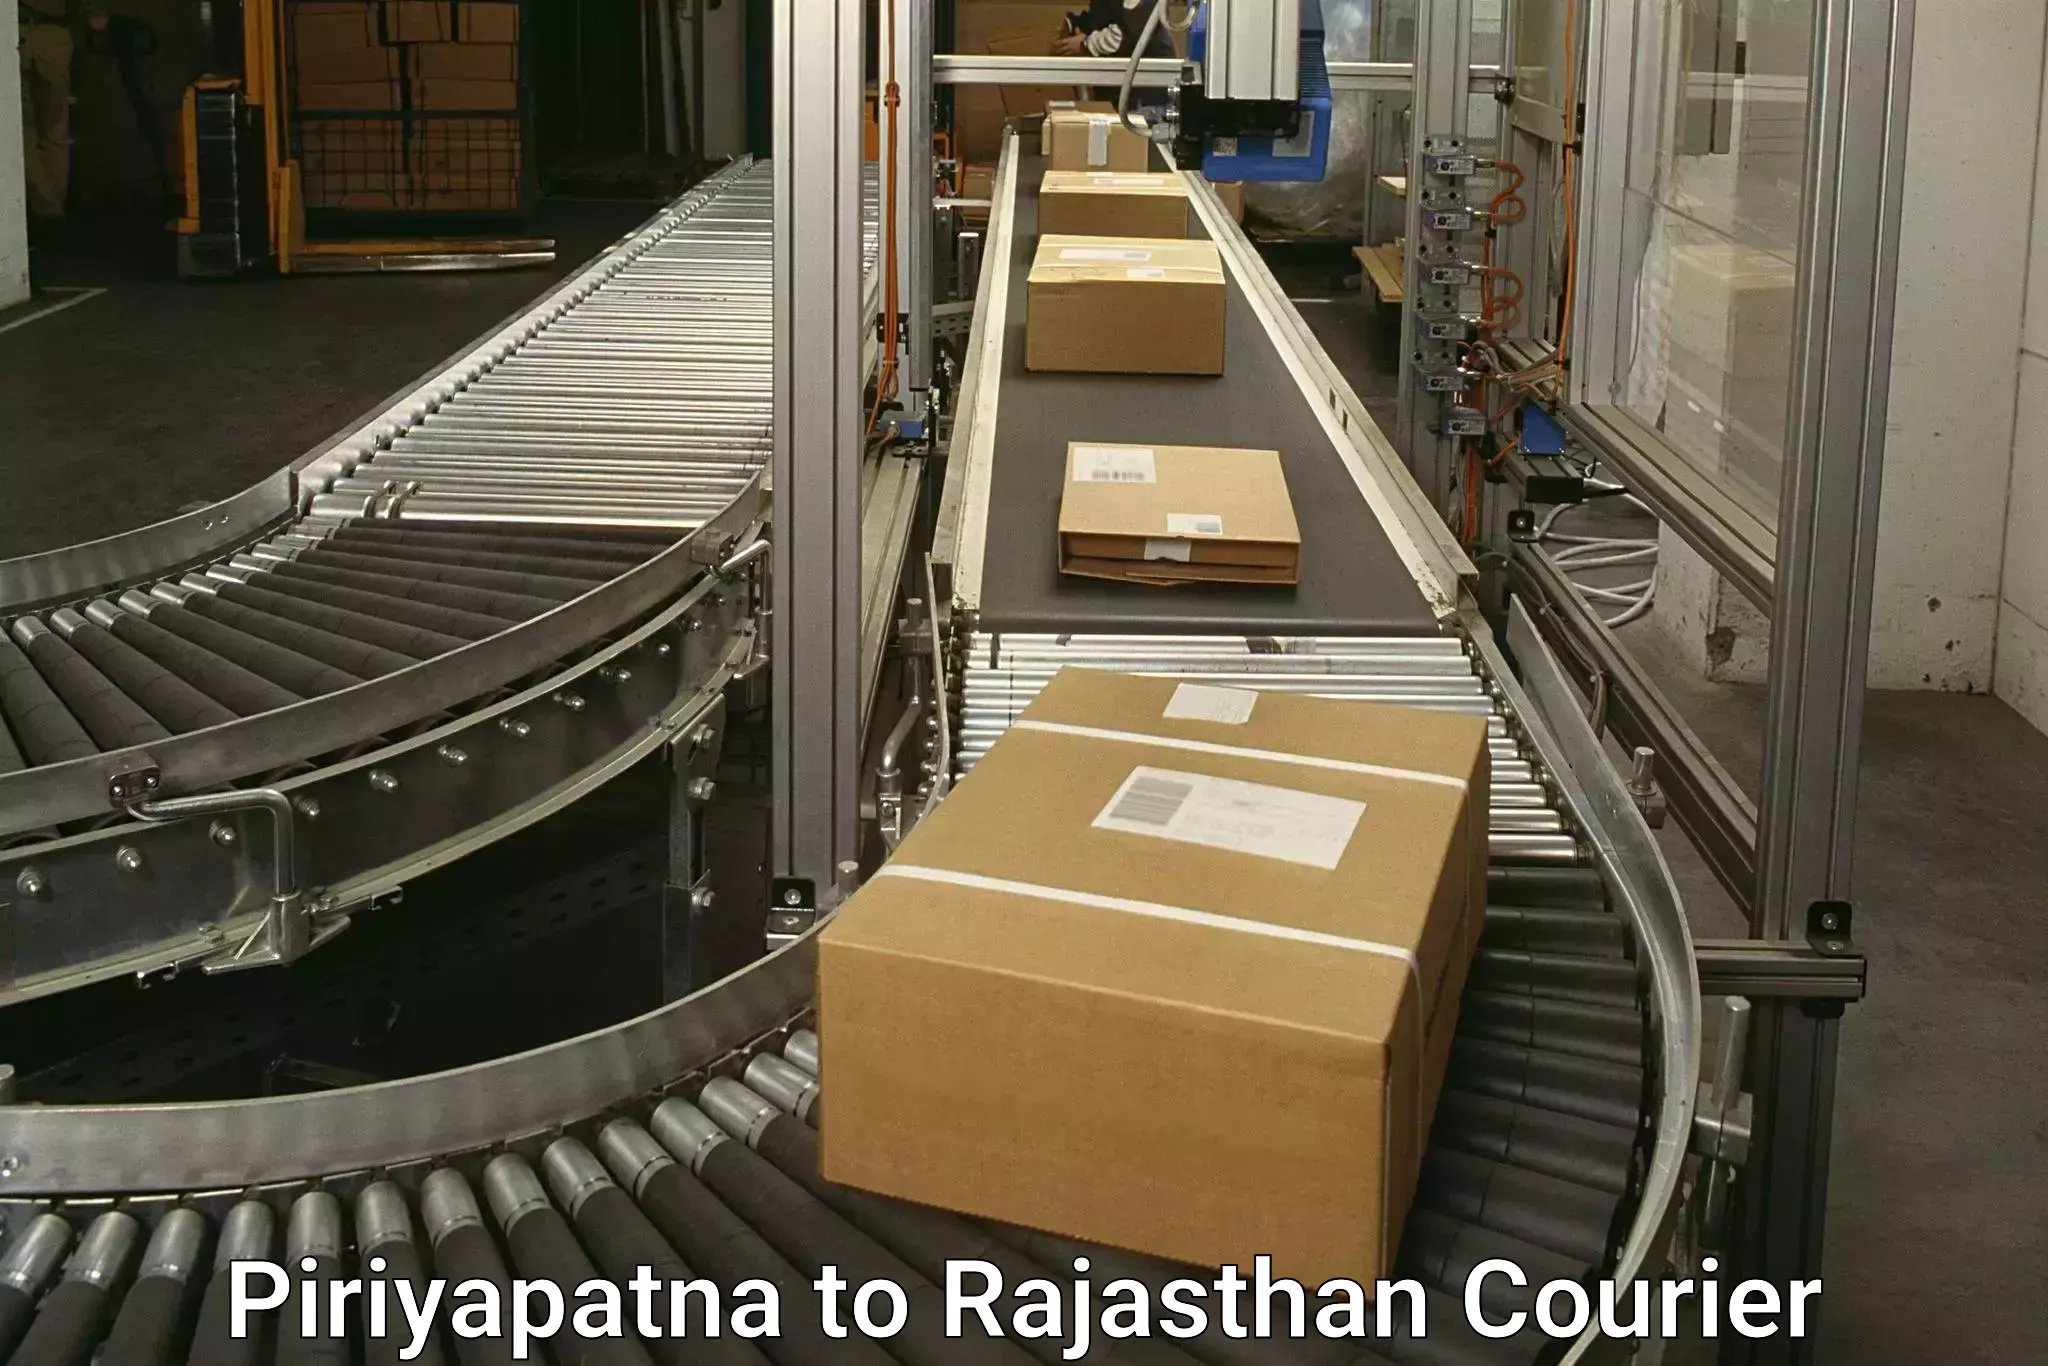 Diverse delivery methods Piriyapatna to Rajasthan